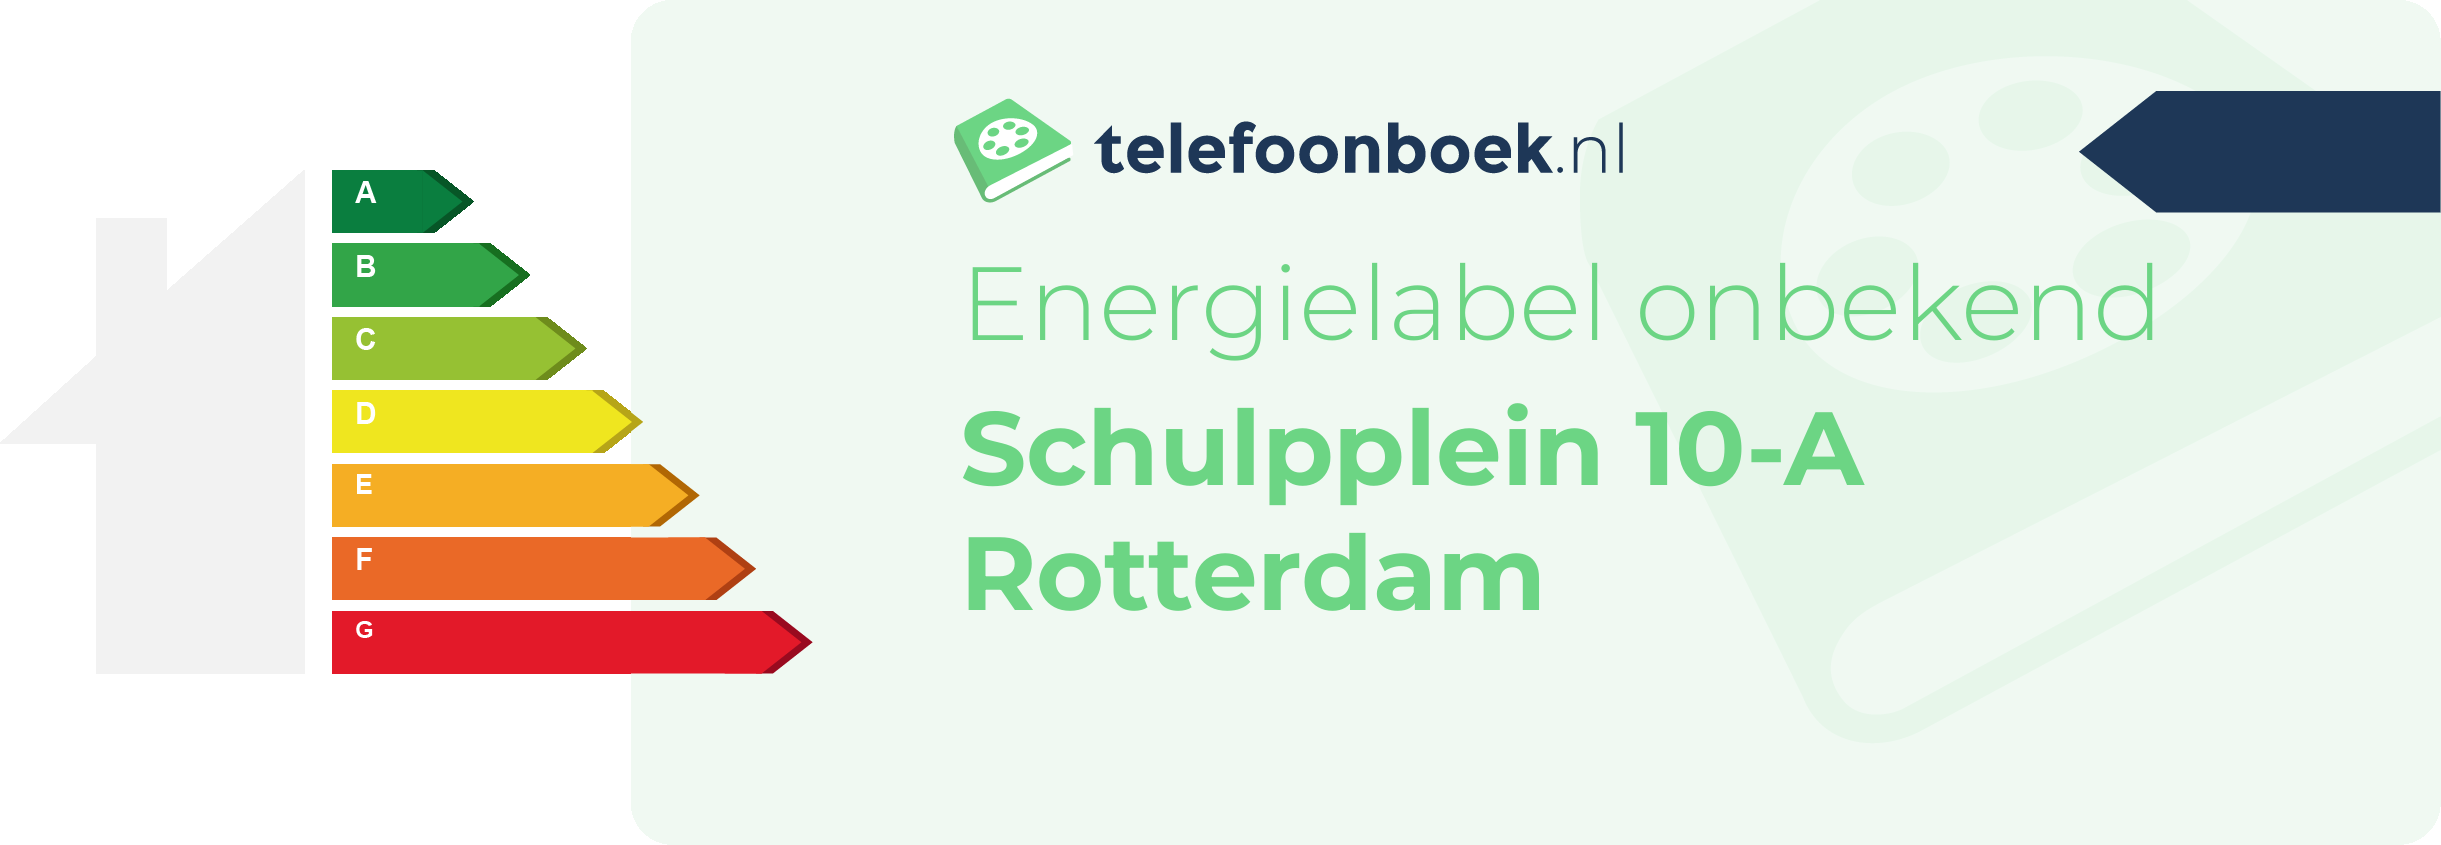 Energielabel Schulpplein 10-A Rotterdam